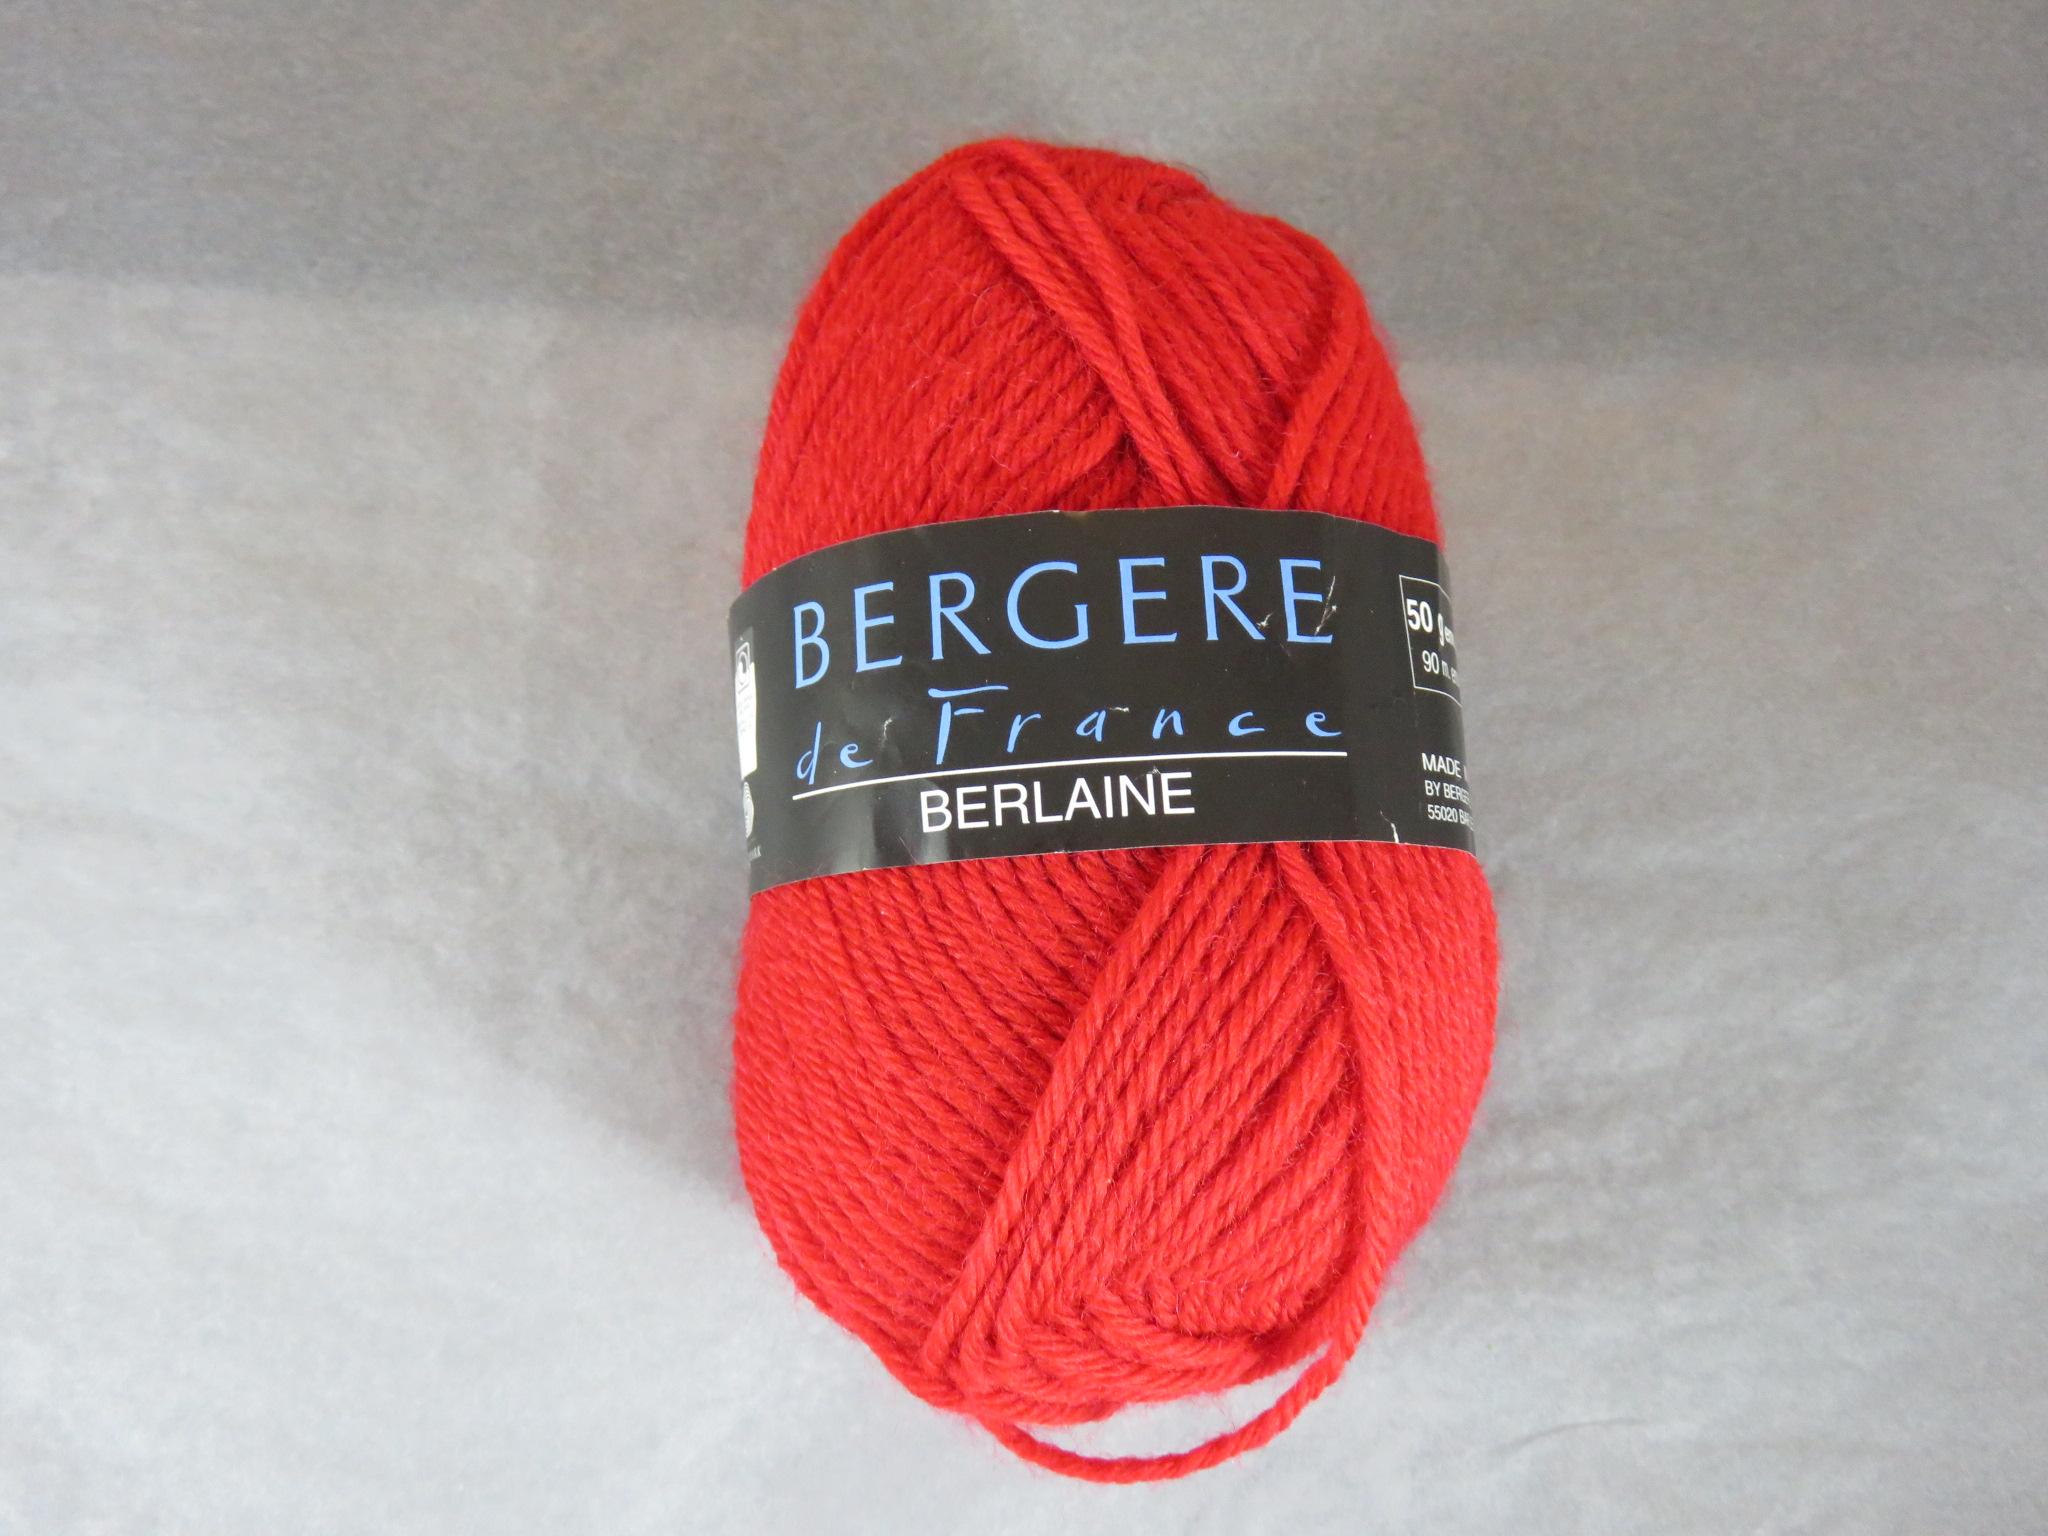 Laine rouge Bergere de France Berlaine laine peignée